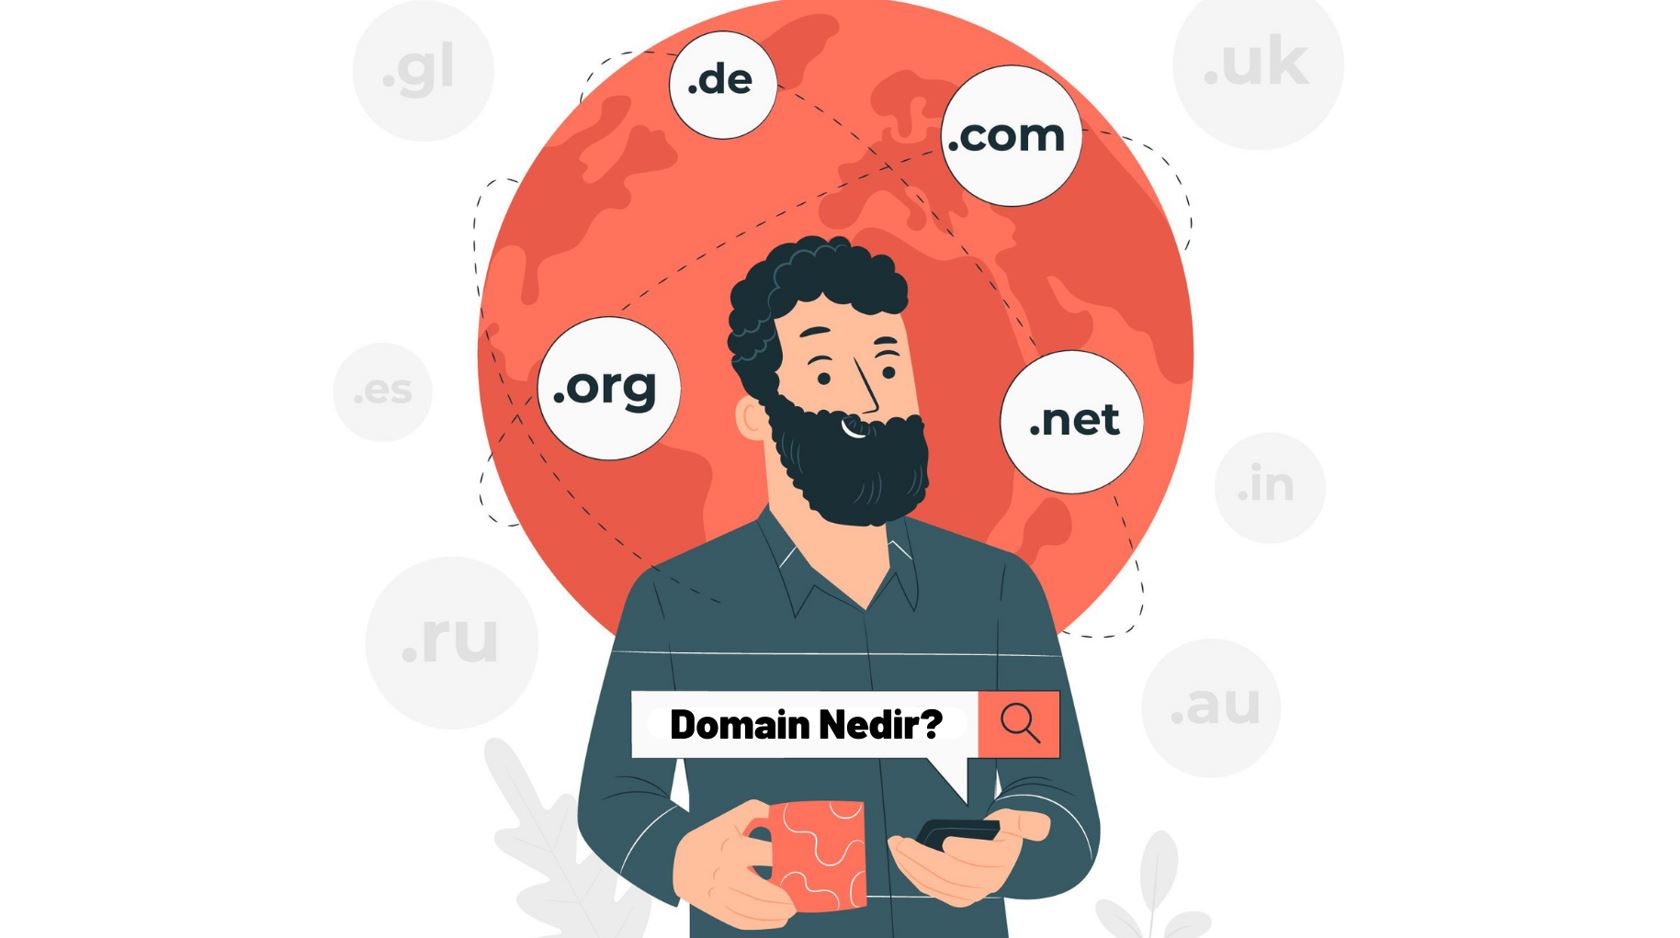 Domain Nedir? Alırken Nelere Dikkat Edilmeli?